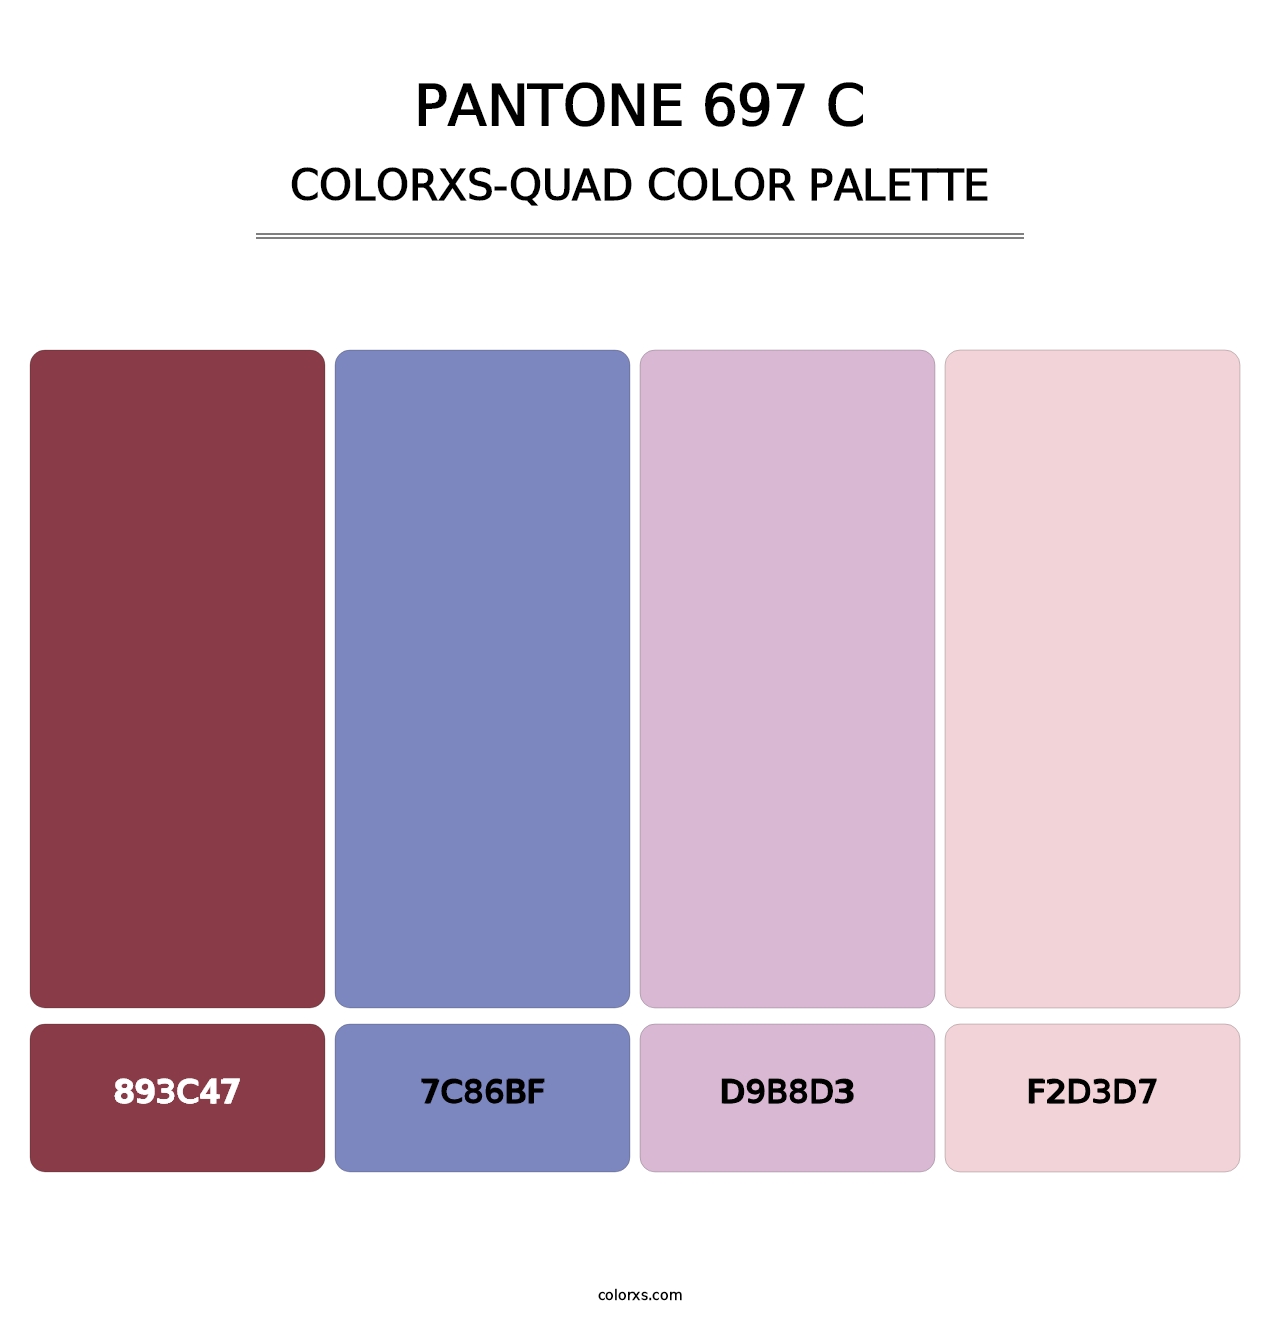 PANTONE 697 C - Colorxs Quad Palette